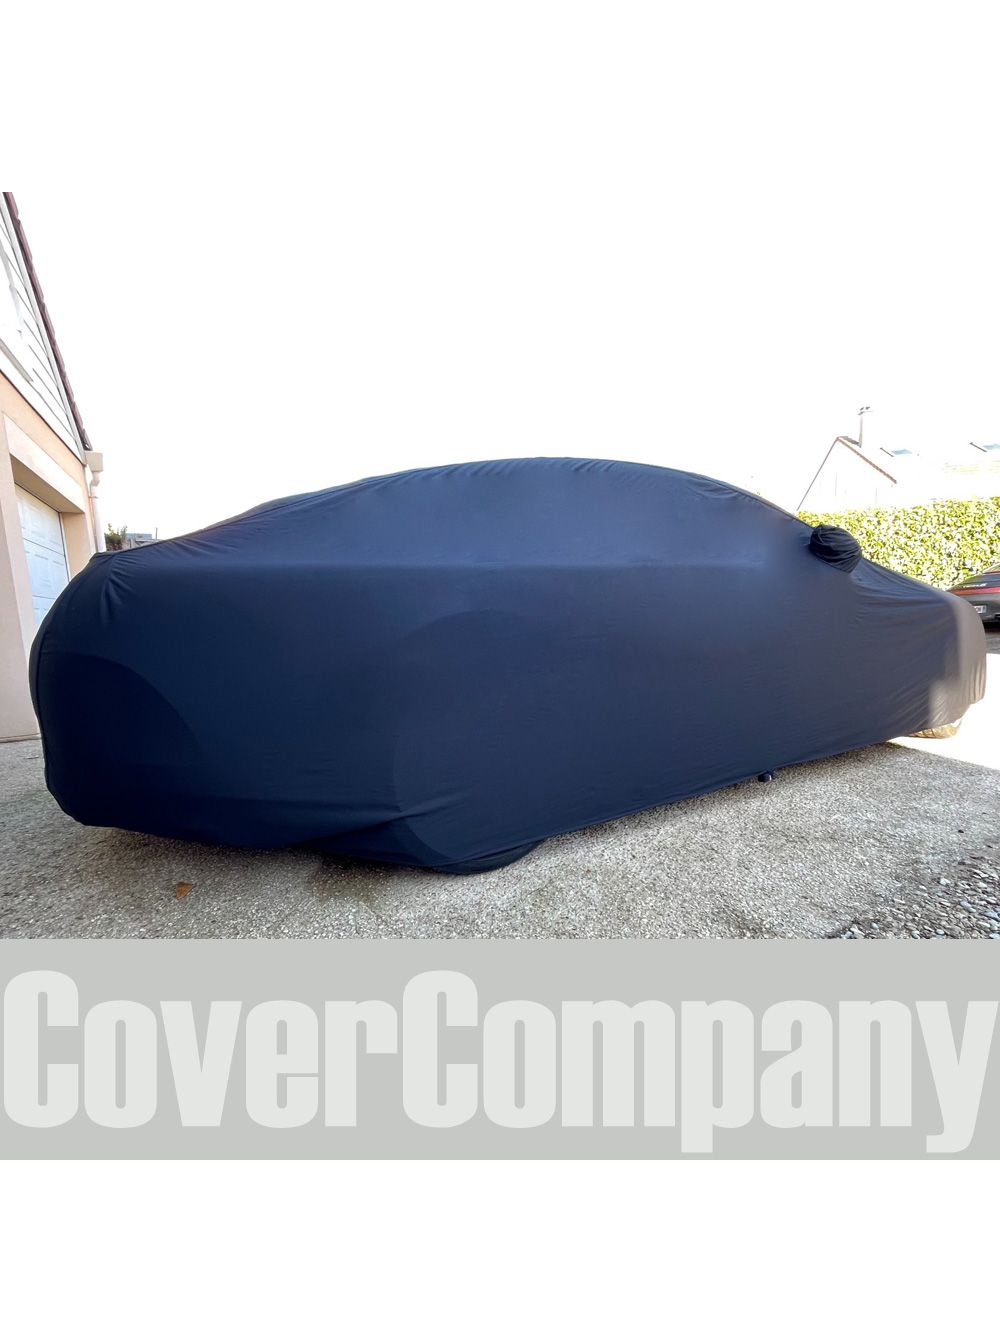 Jaguar Custom Outdoor Car Cover. Waterproof car cover for Jaguar